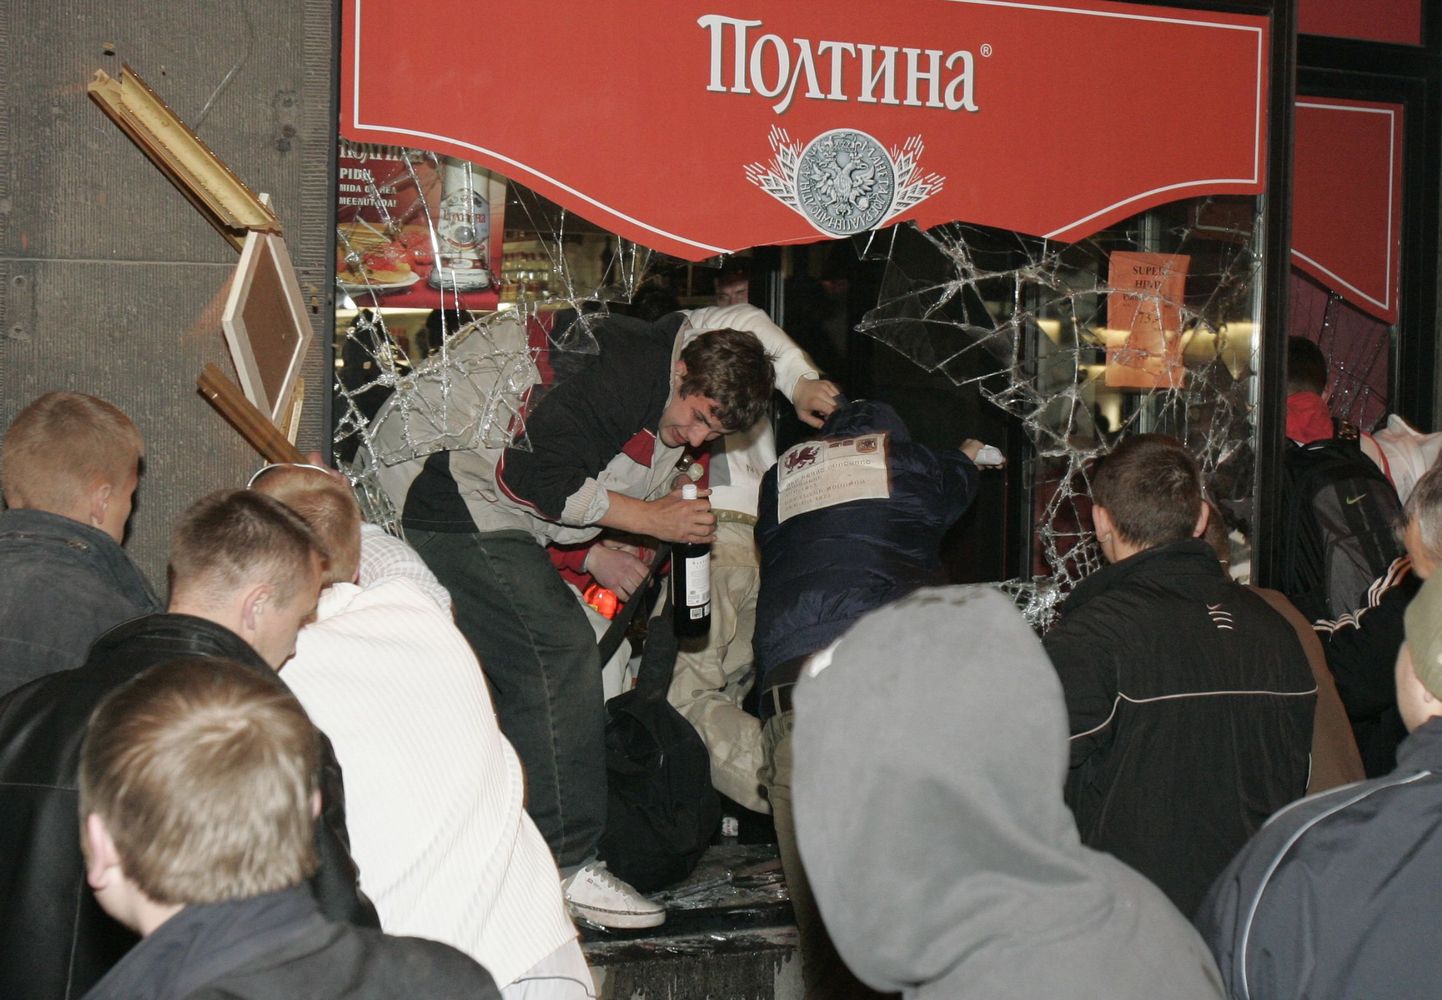 Aprillirahutused Tallinnas 2007. aastal.